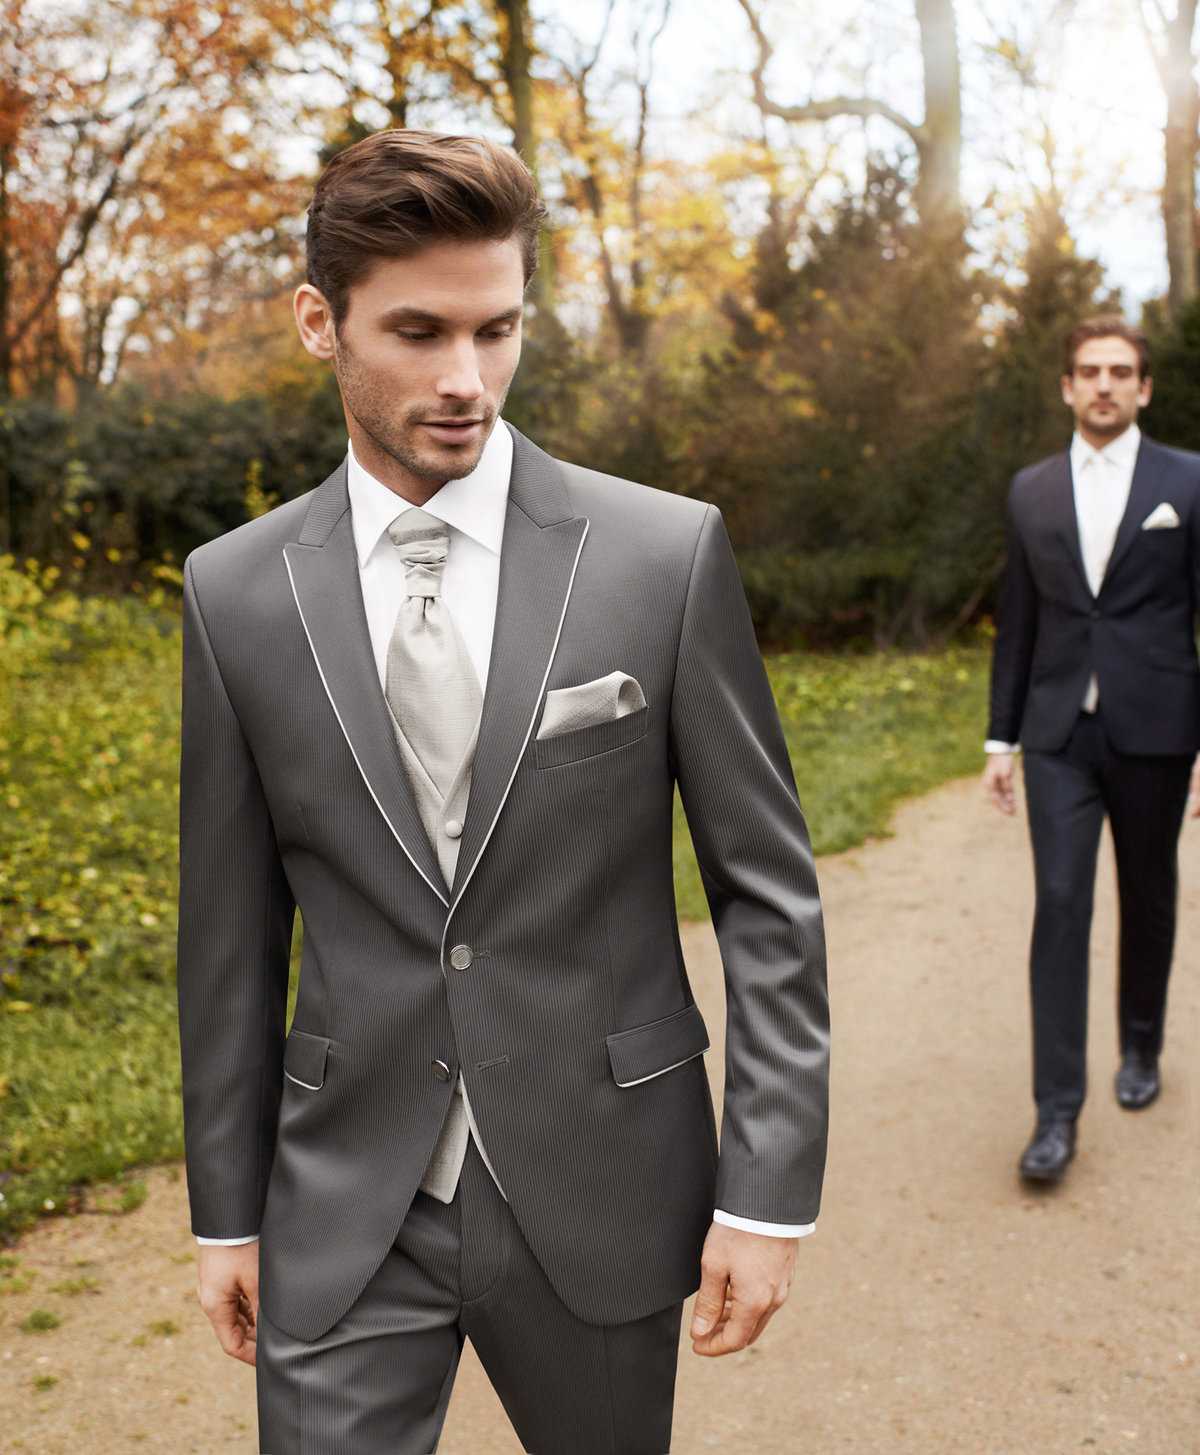 Как выбрать мужской костюм на свадьбу жениху в [2019] – цвет & фасон